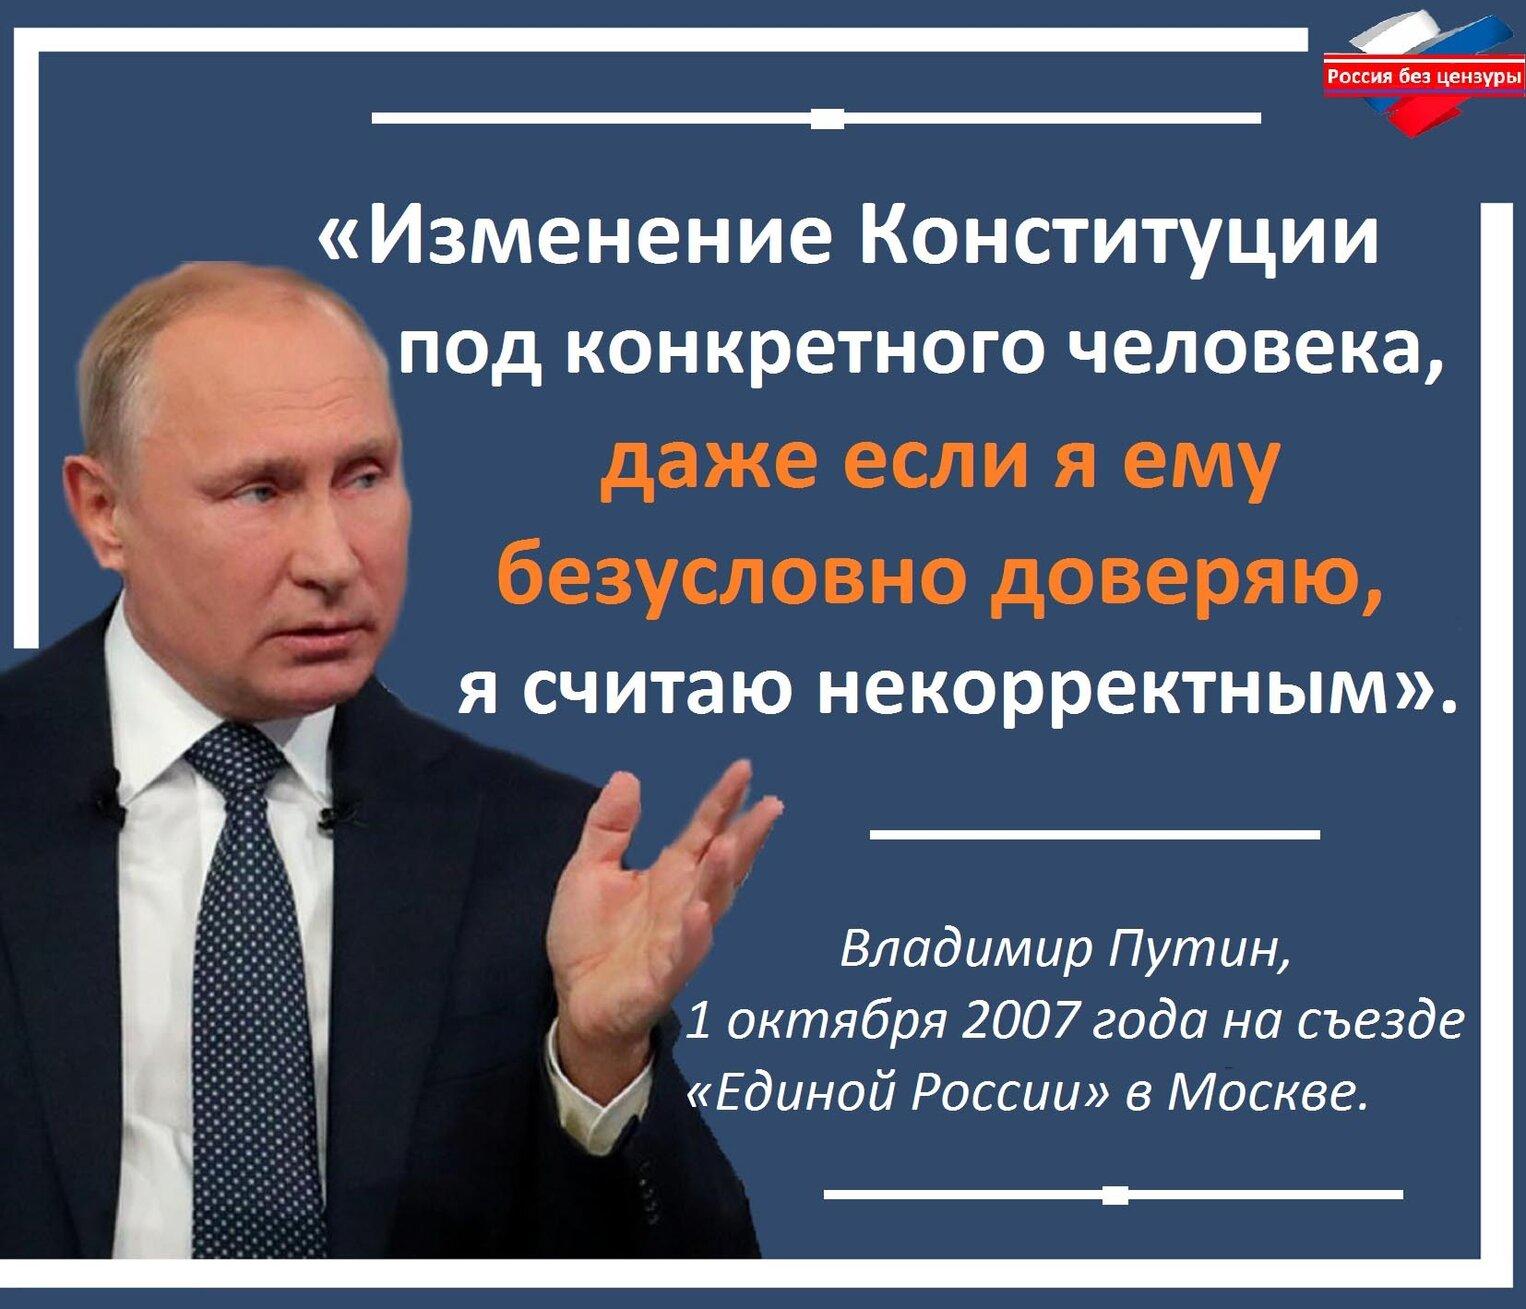 В россии без изменений. Цитата Путина про Конституцию. Законы против народа.